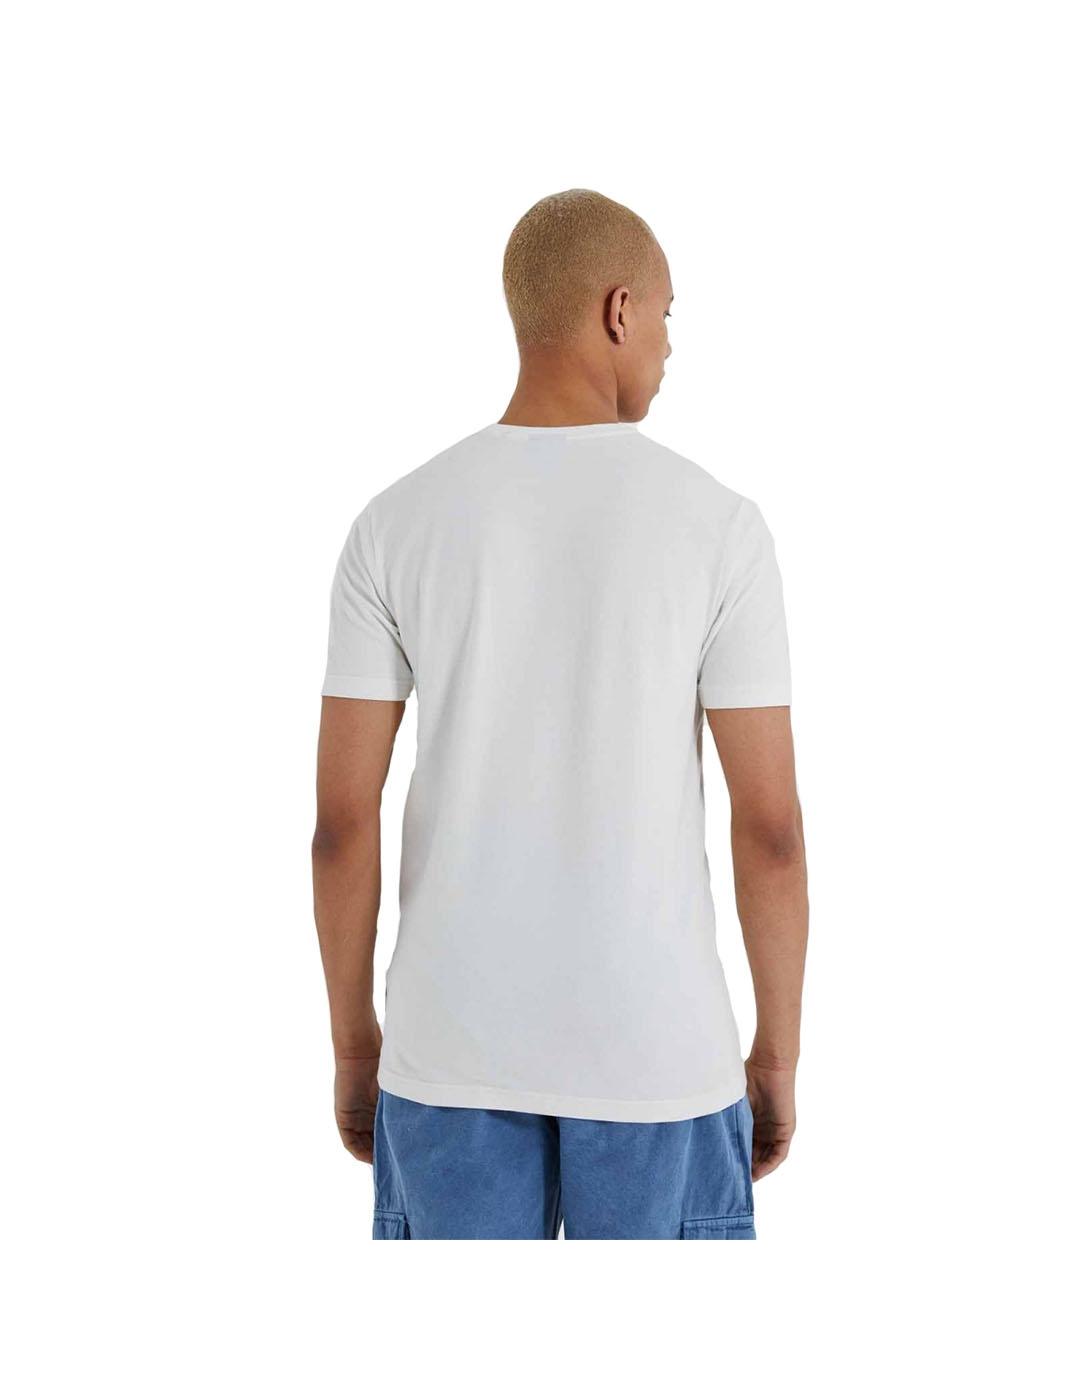 Camiseta Hombre Ellesse Valturno Blanca